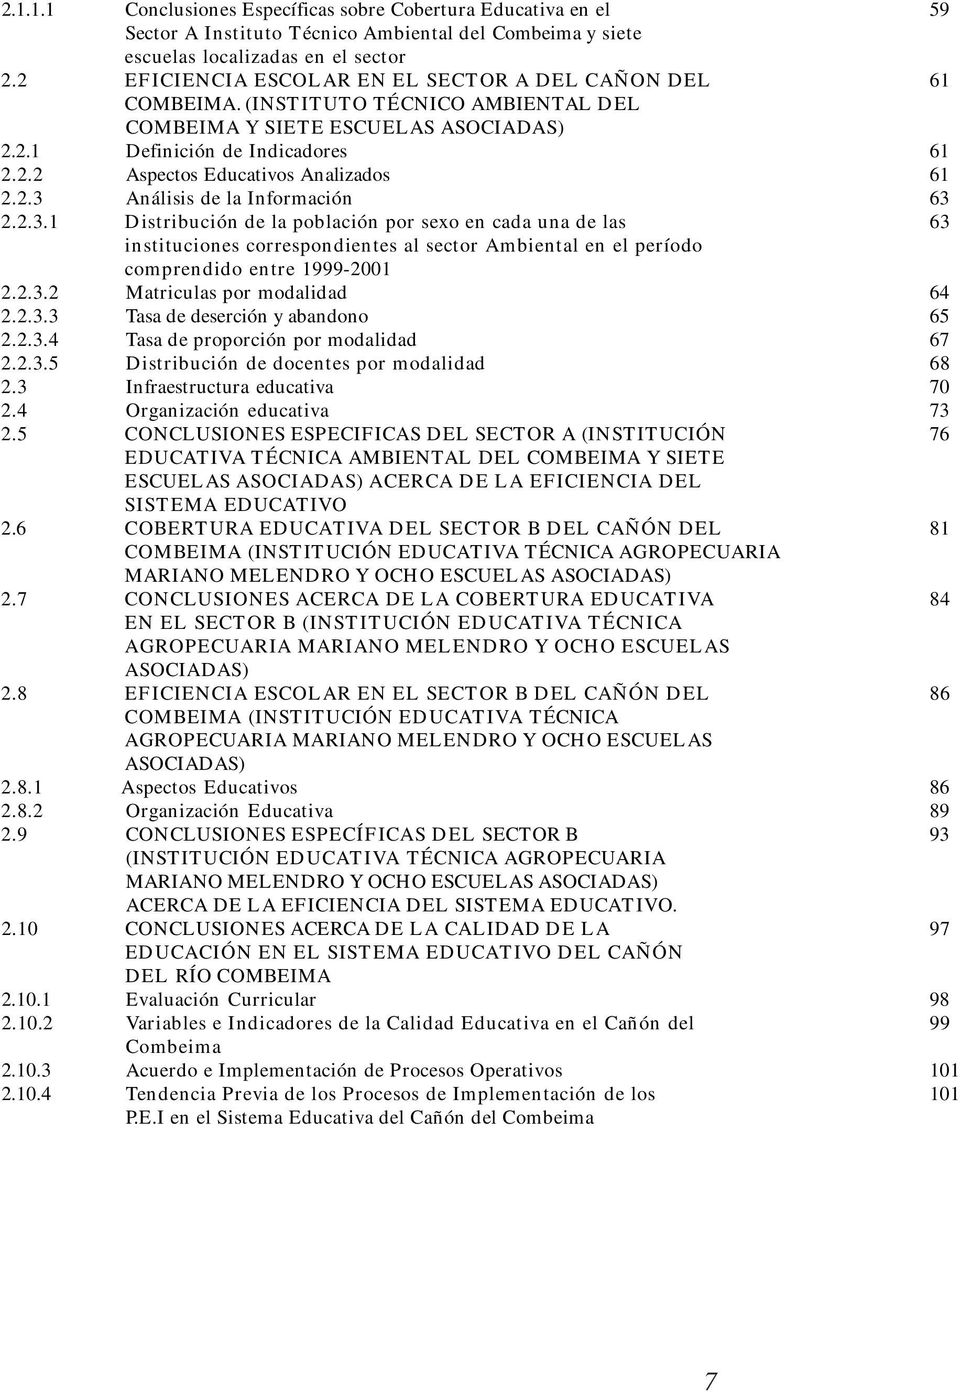 2.3 Análisis de la Información 63 2.2.3.1 Distribución de la población por sexo en cada una de las 63 instituciones correspondientes al sector Ambiental en el período comprendido entre 1999-2001 2.2.3.2 Matriculas por modalidad 64 2.